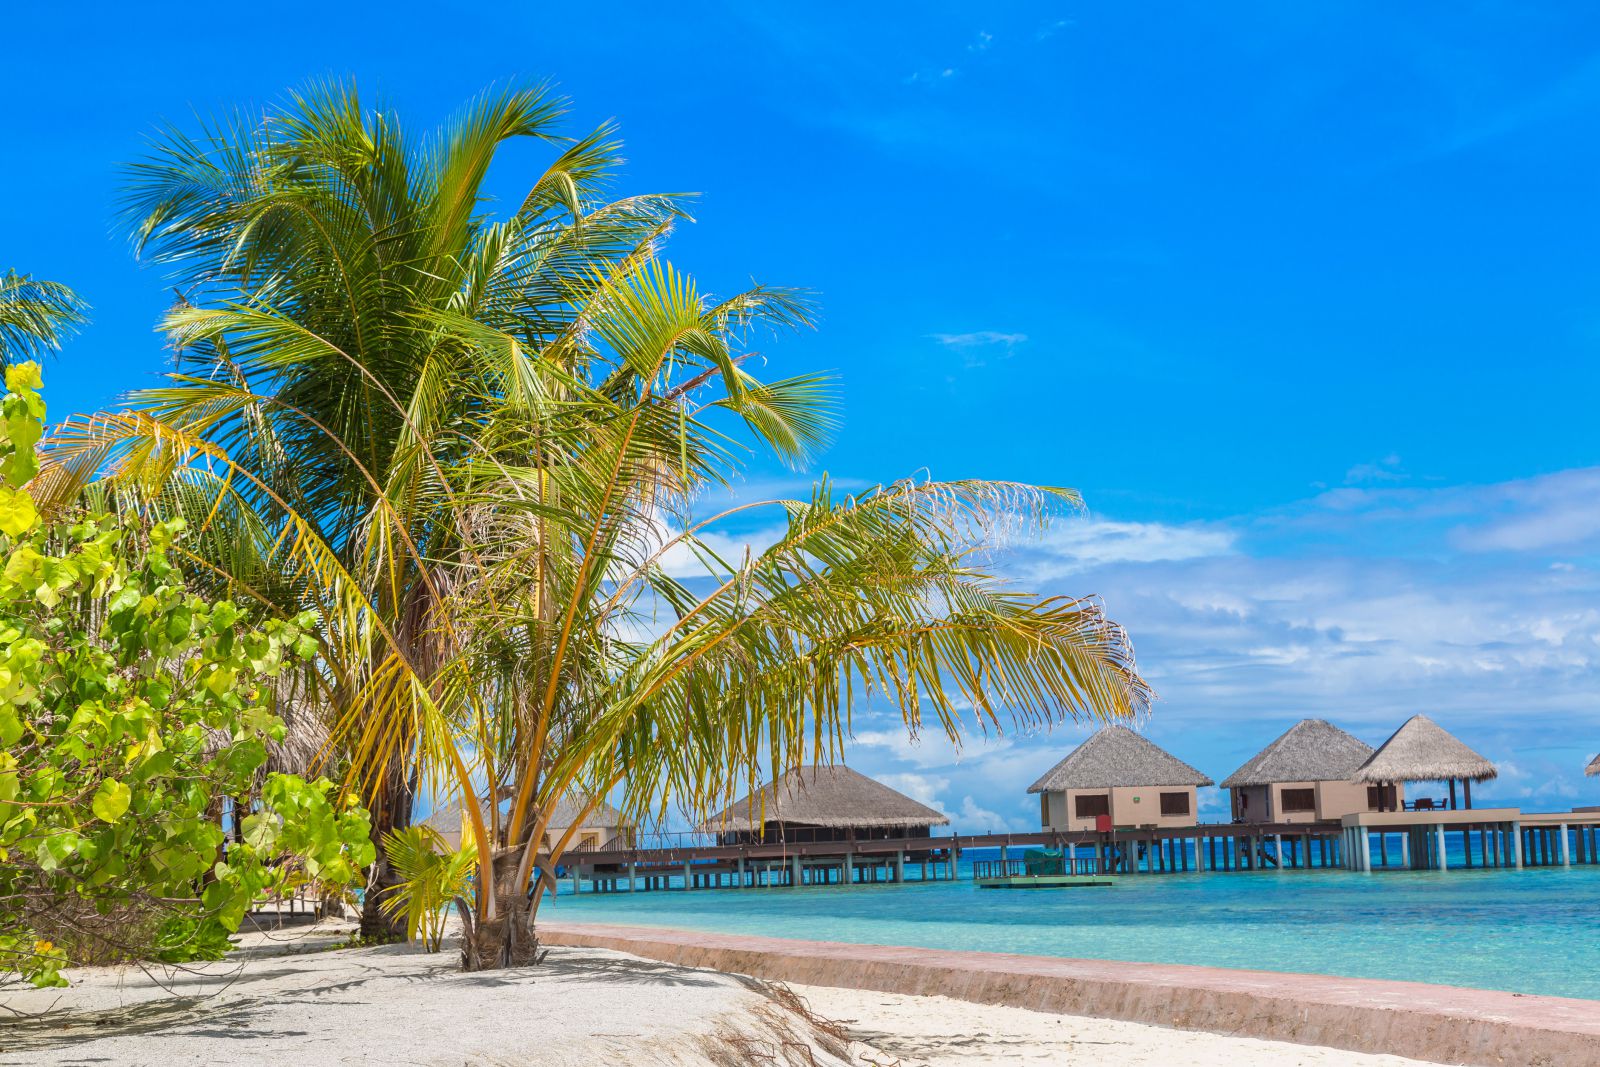 Мальдивы во всей красе: загляните в нашу фотогалерею